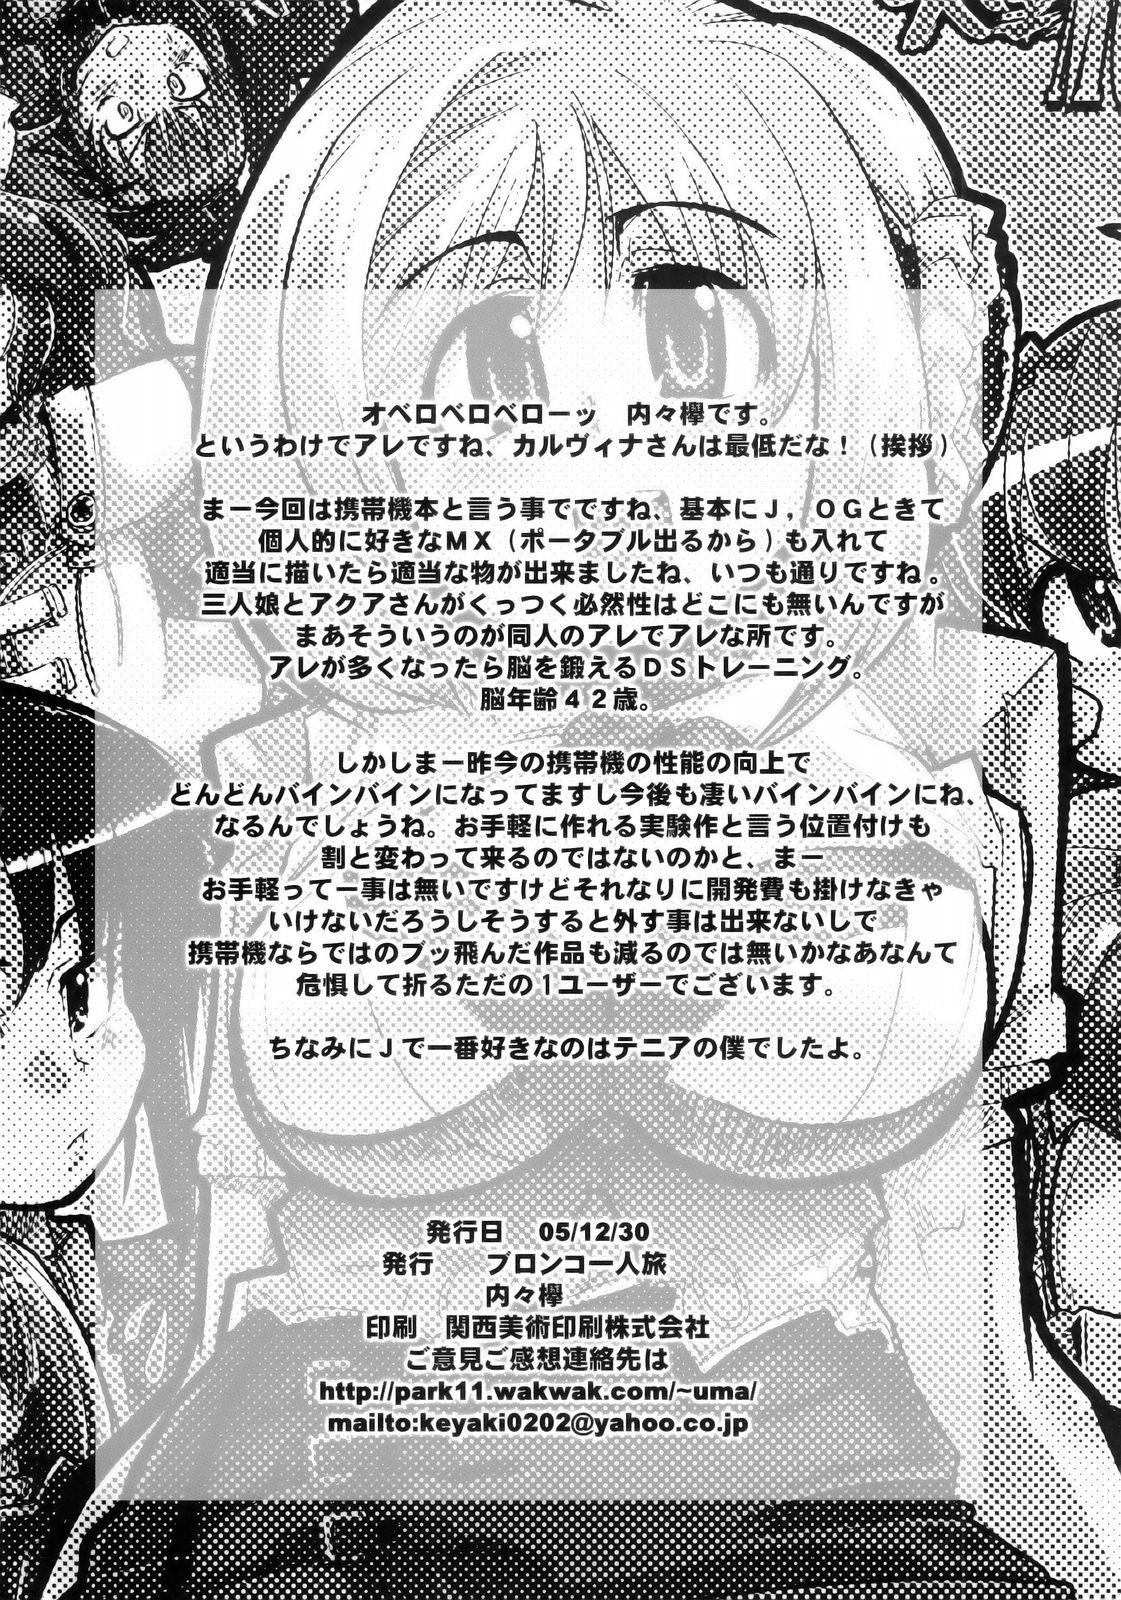 Strap On Boku no Watashi no Super Bobobbo Taisen MGJOX - Super robot wars Amateurporn - Page 29